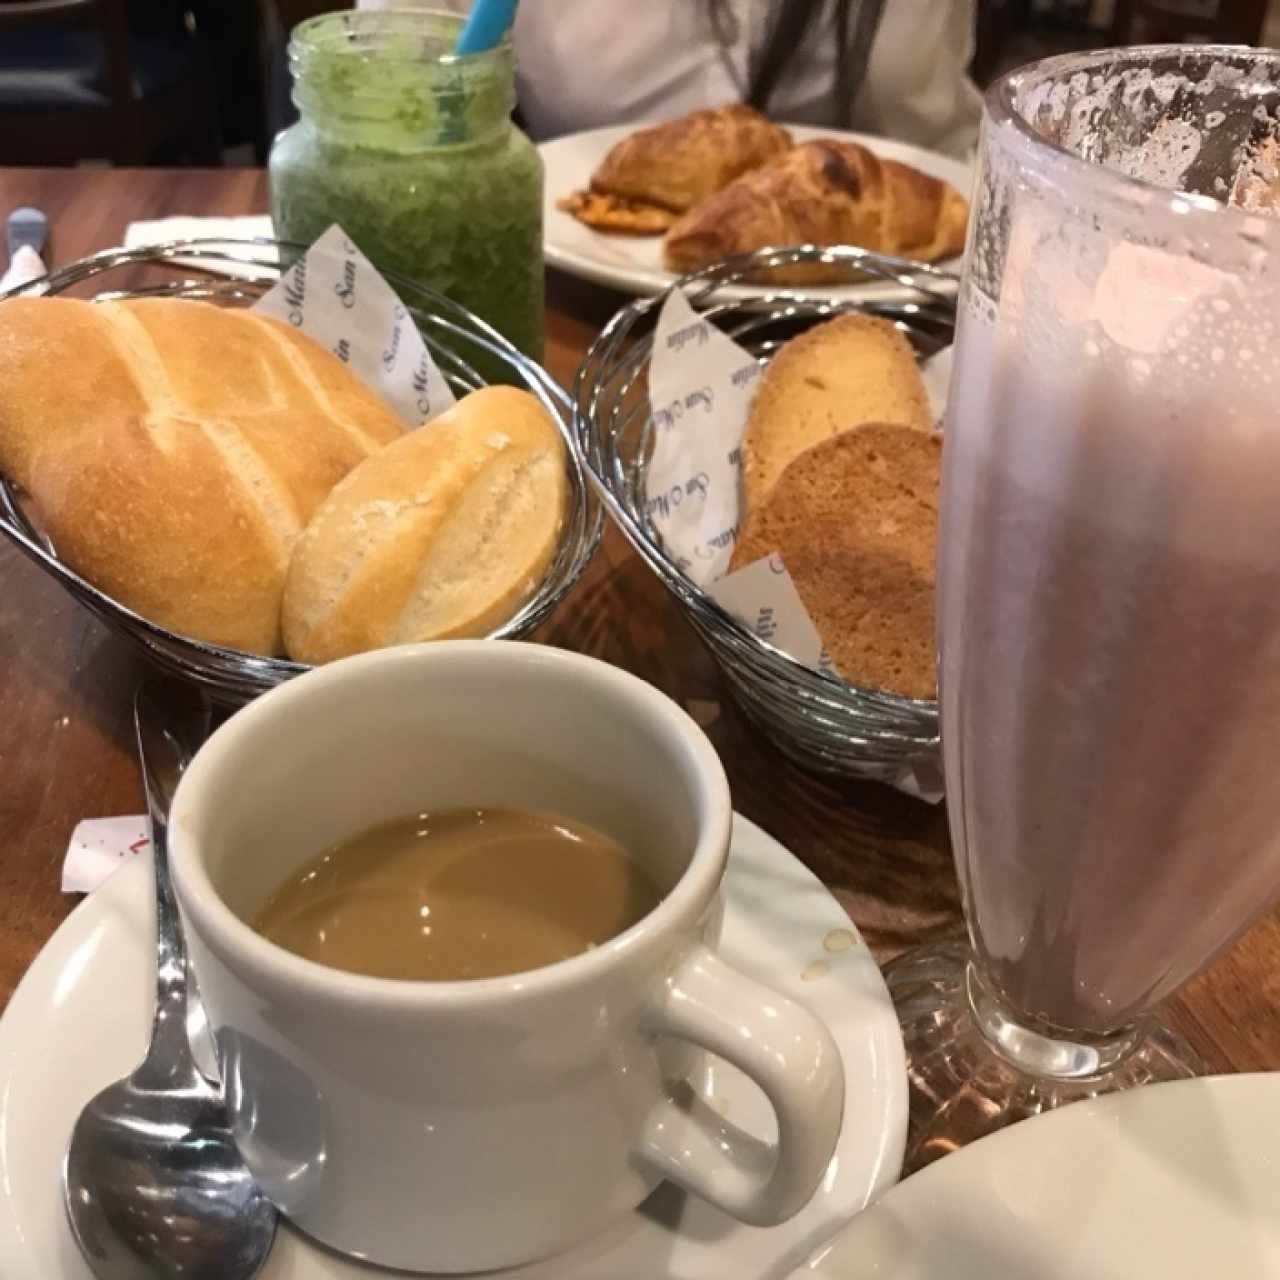 Café, licuado (banano y fresa), canastas de pan